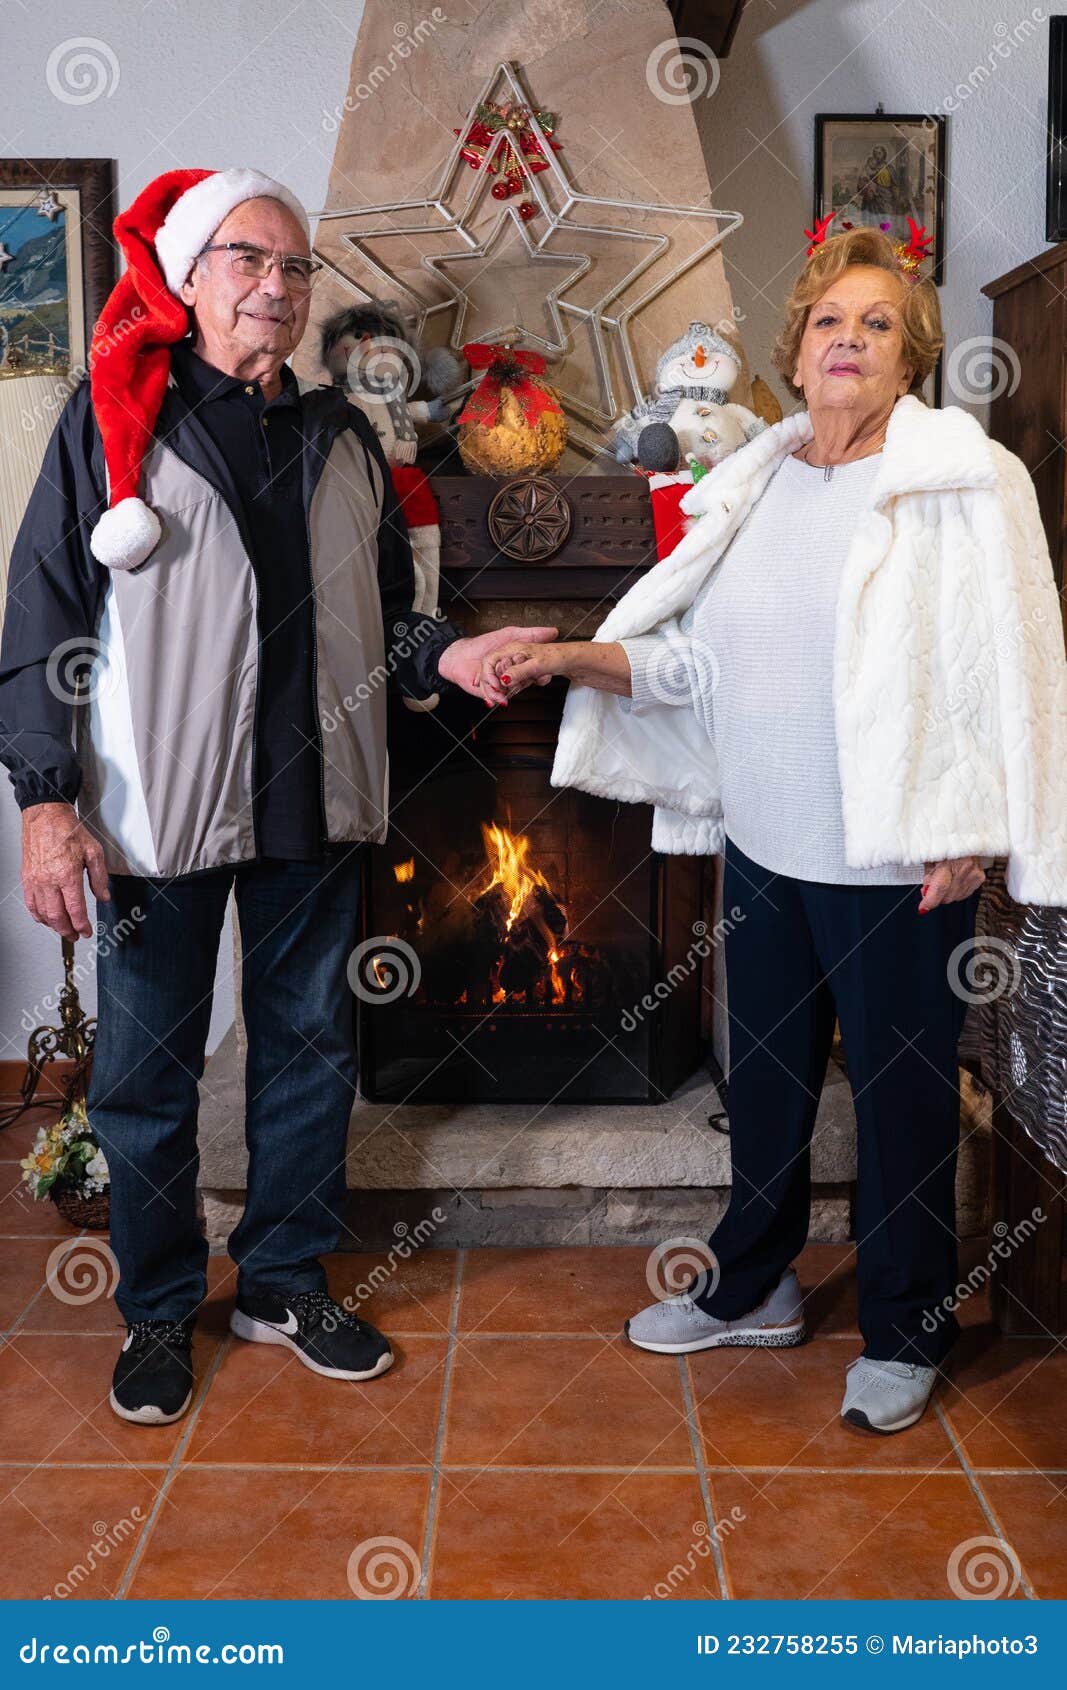 senior couple celebrating christmas,enjoying these emotional and family holidays